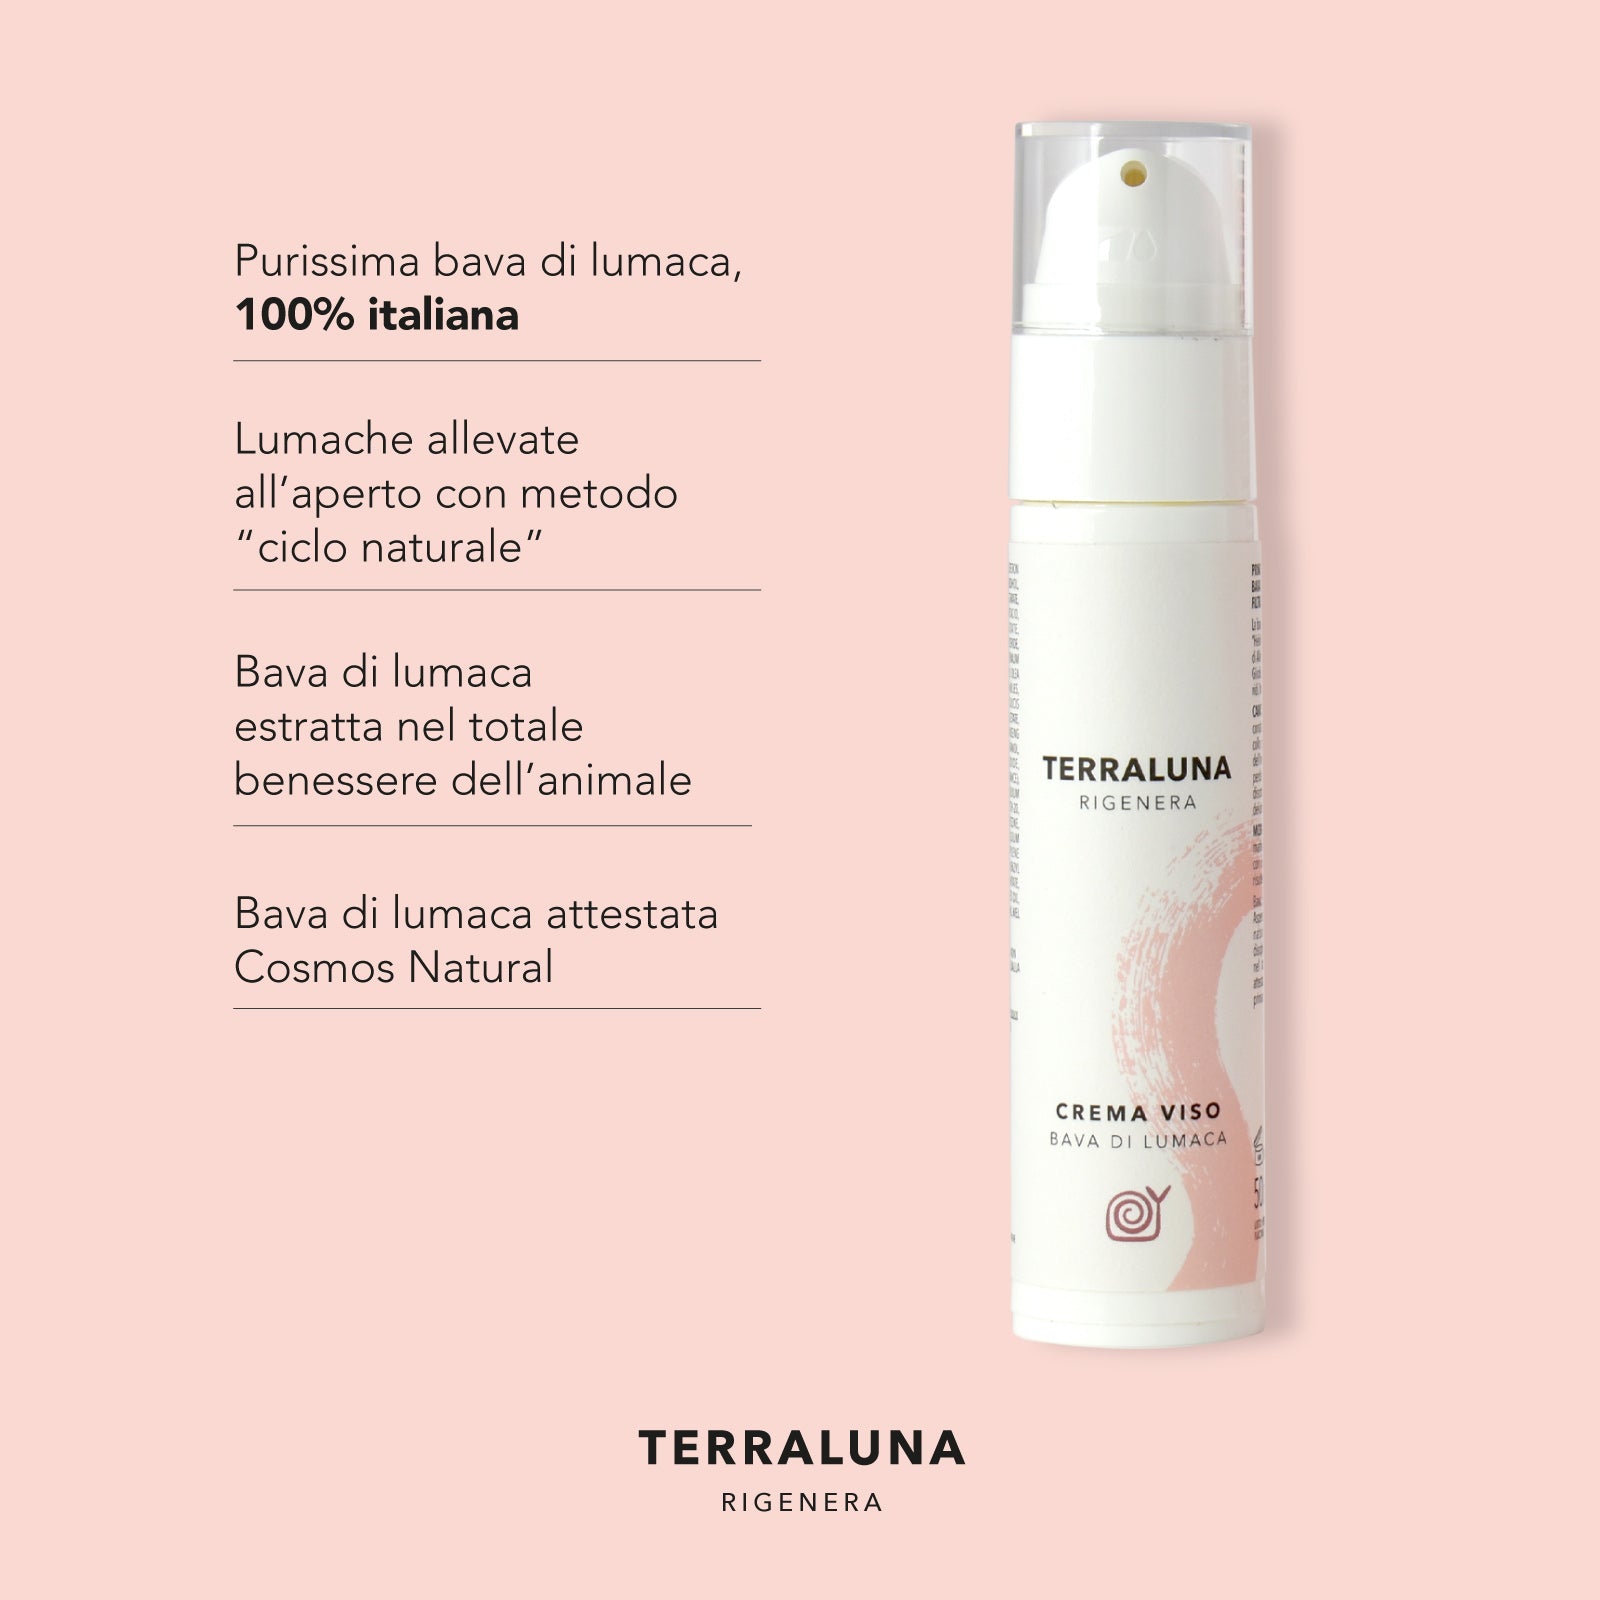 Flacone airless crema viso TERRALUNA con bava di lumaca, etica e sostenibilità enfatizzate, 100% italiana.